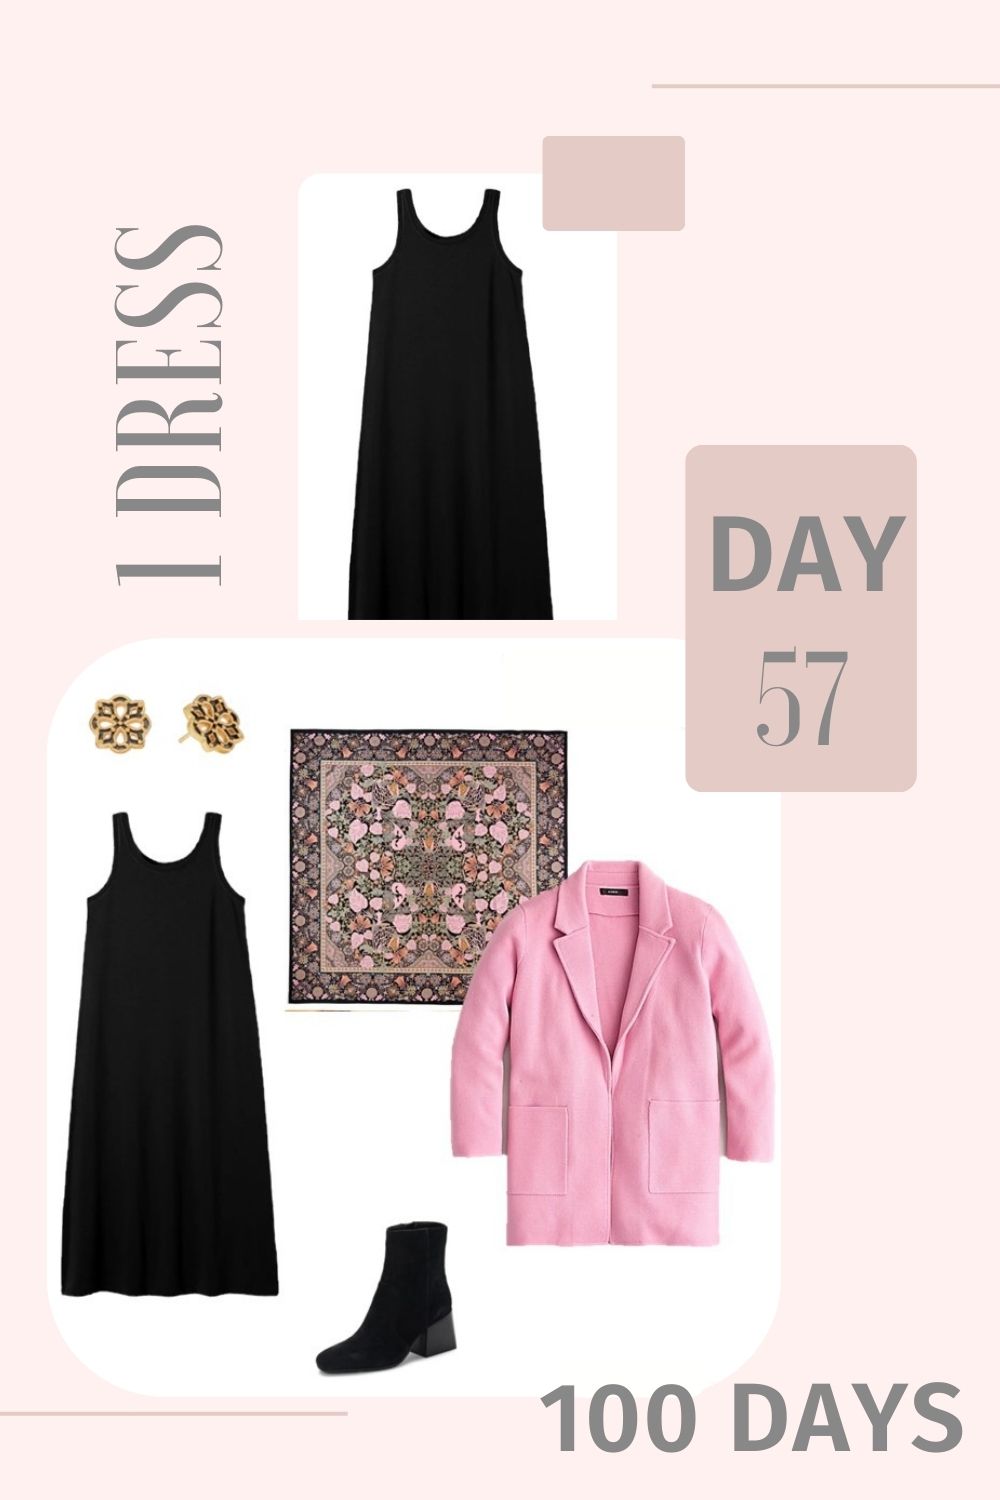 1 Dress 100 Days - Day 57